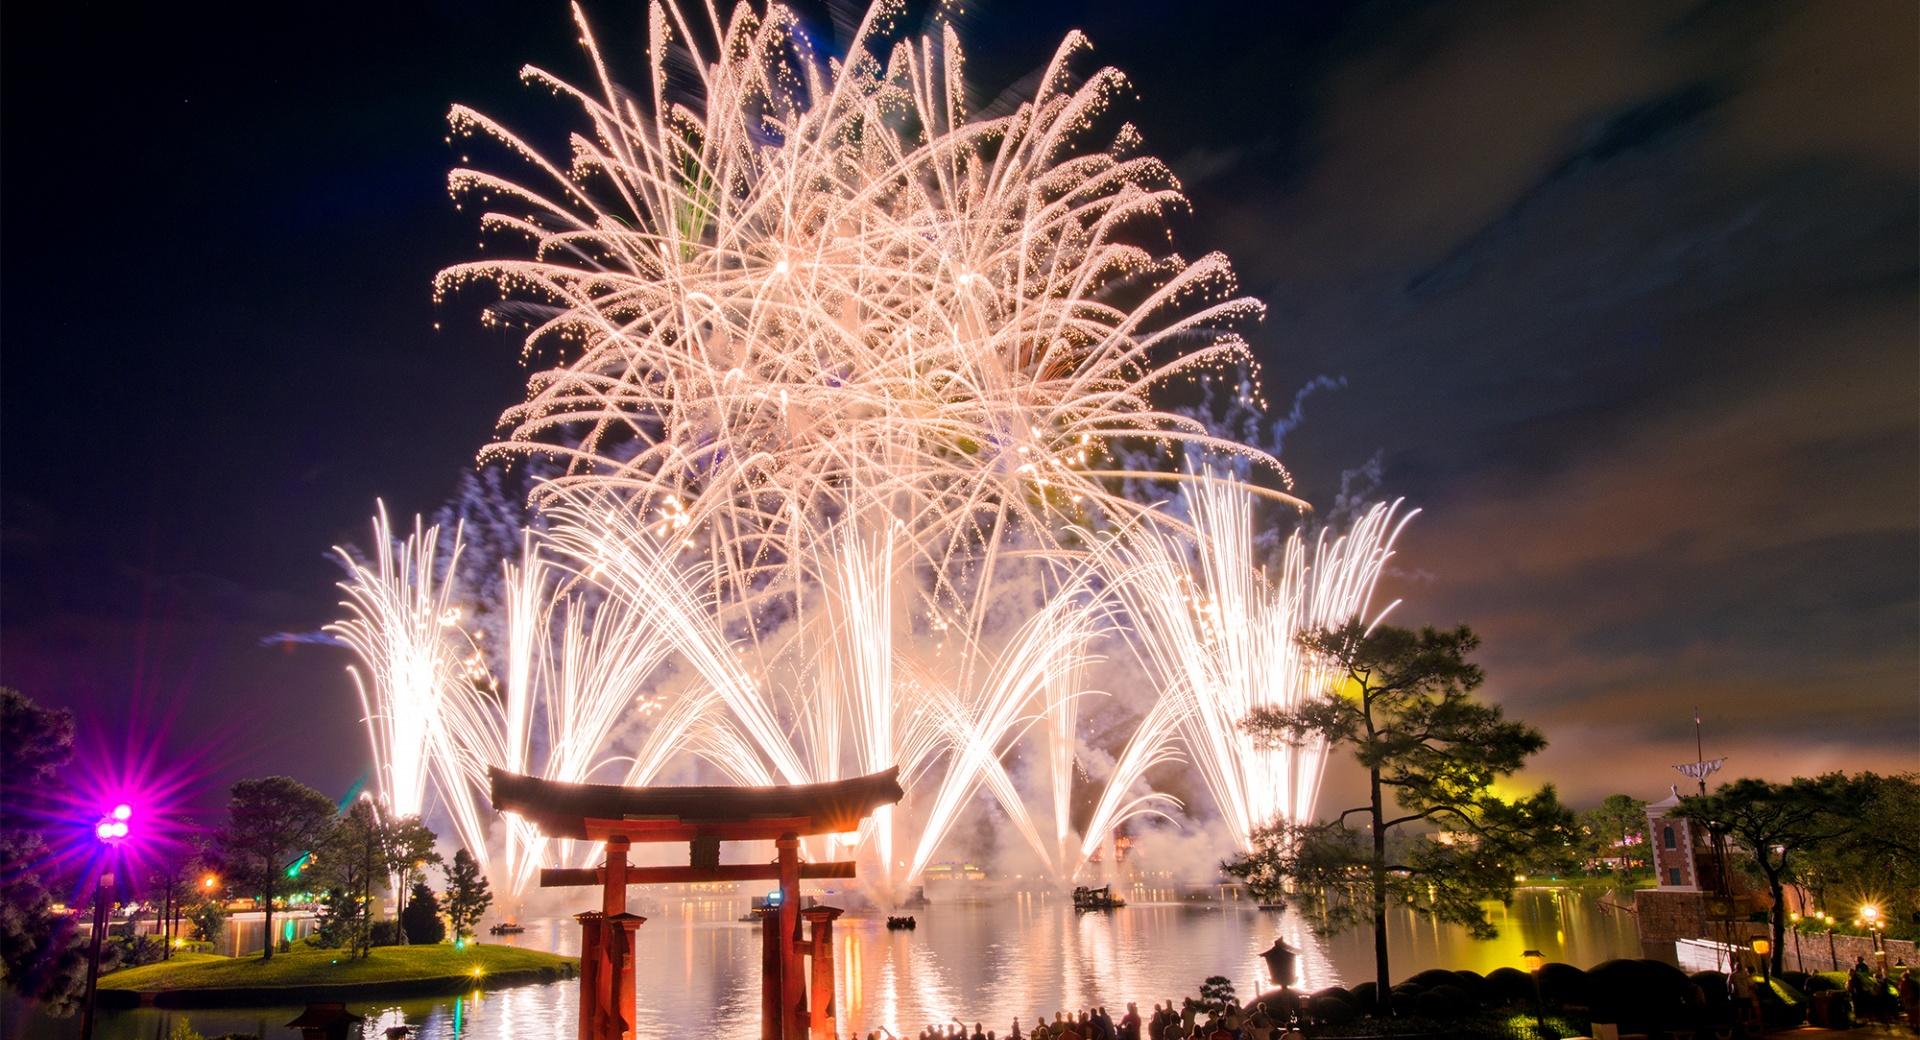 Walt Disney World Fireworks at 2048 x 2048 iPad size wallpapers HD quality